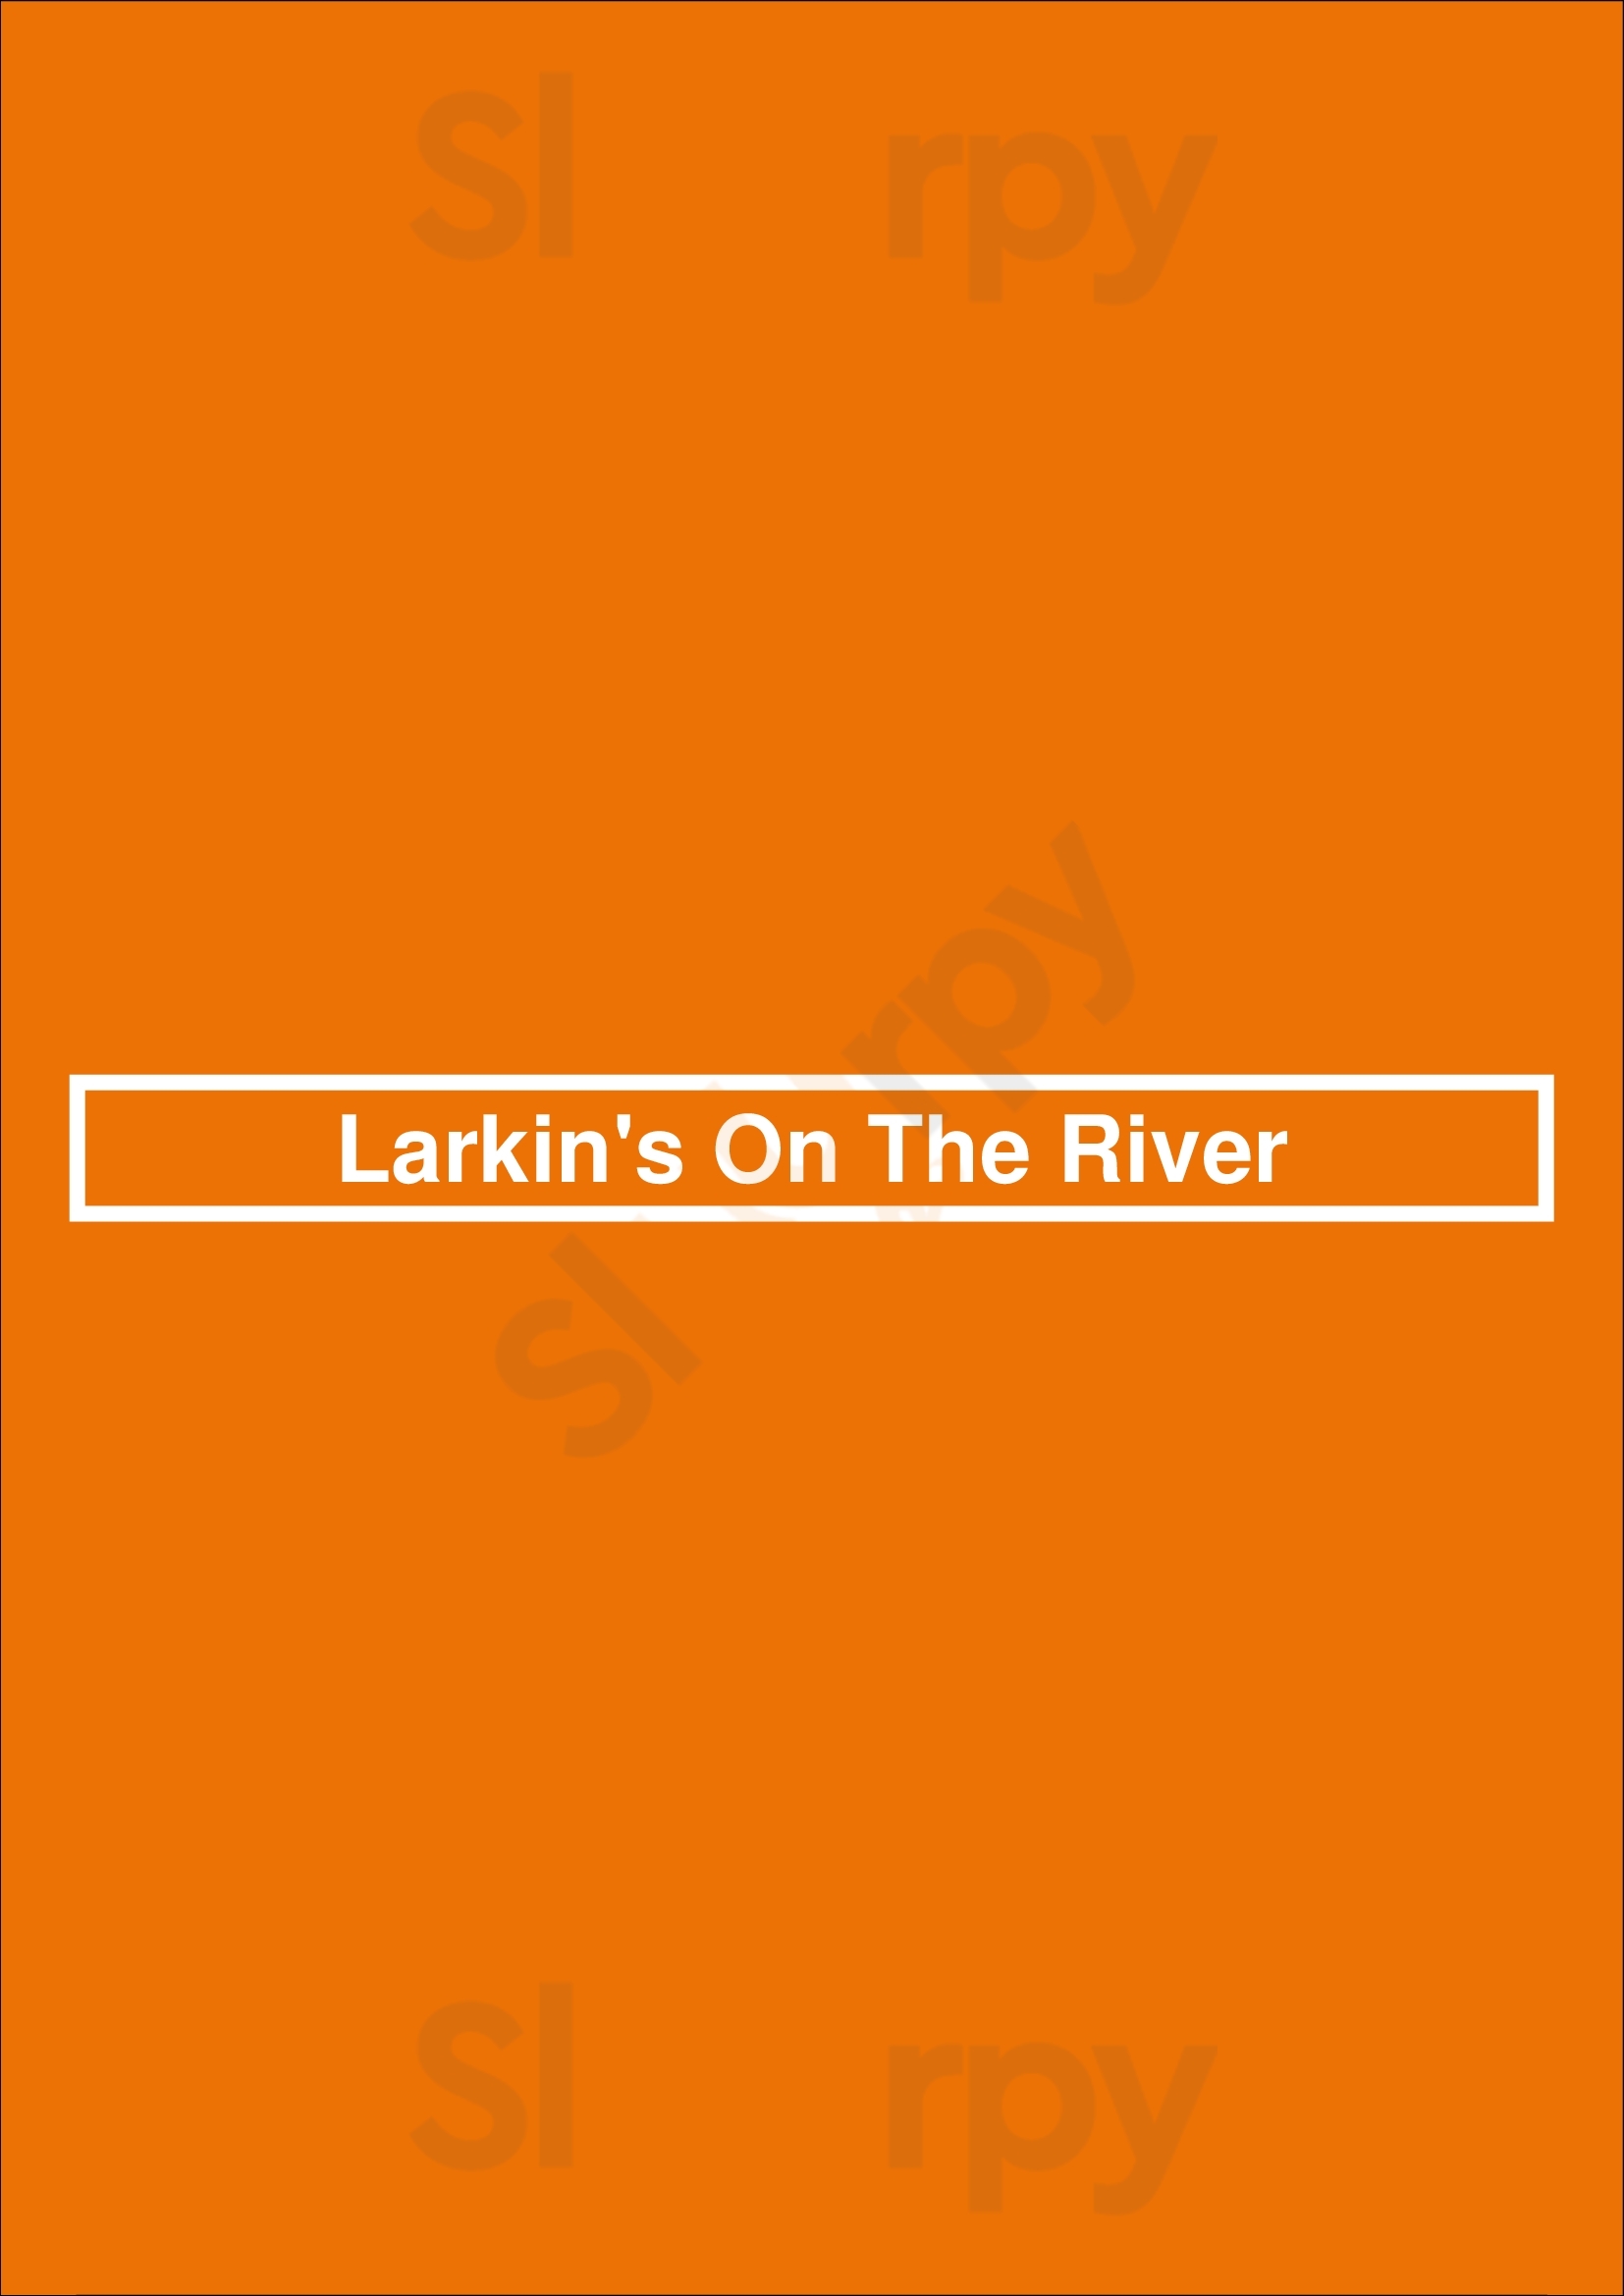 Larkin's Greenville Menu - 1